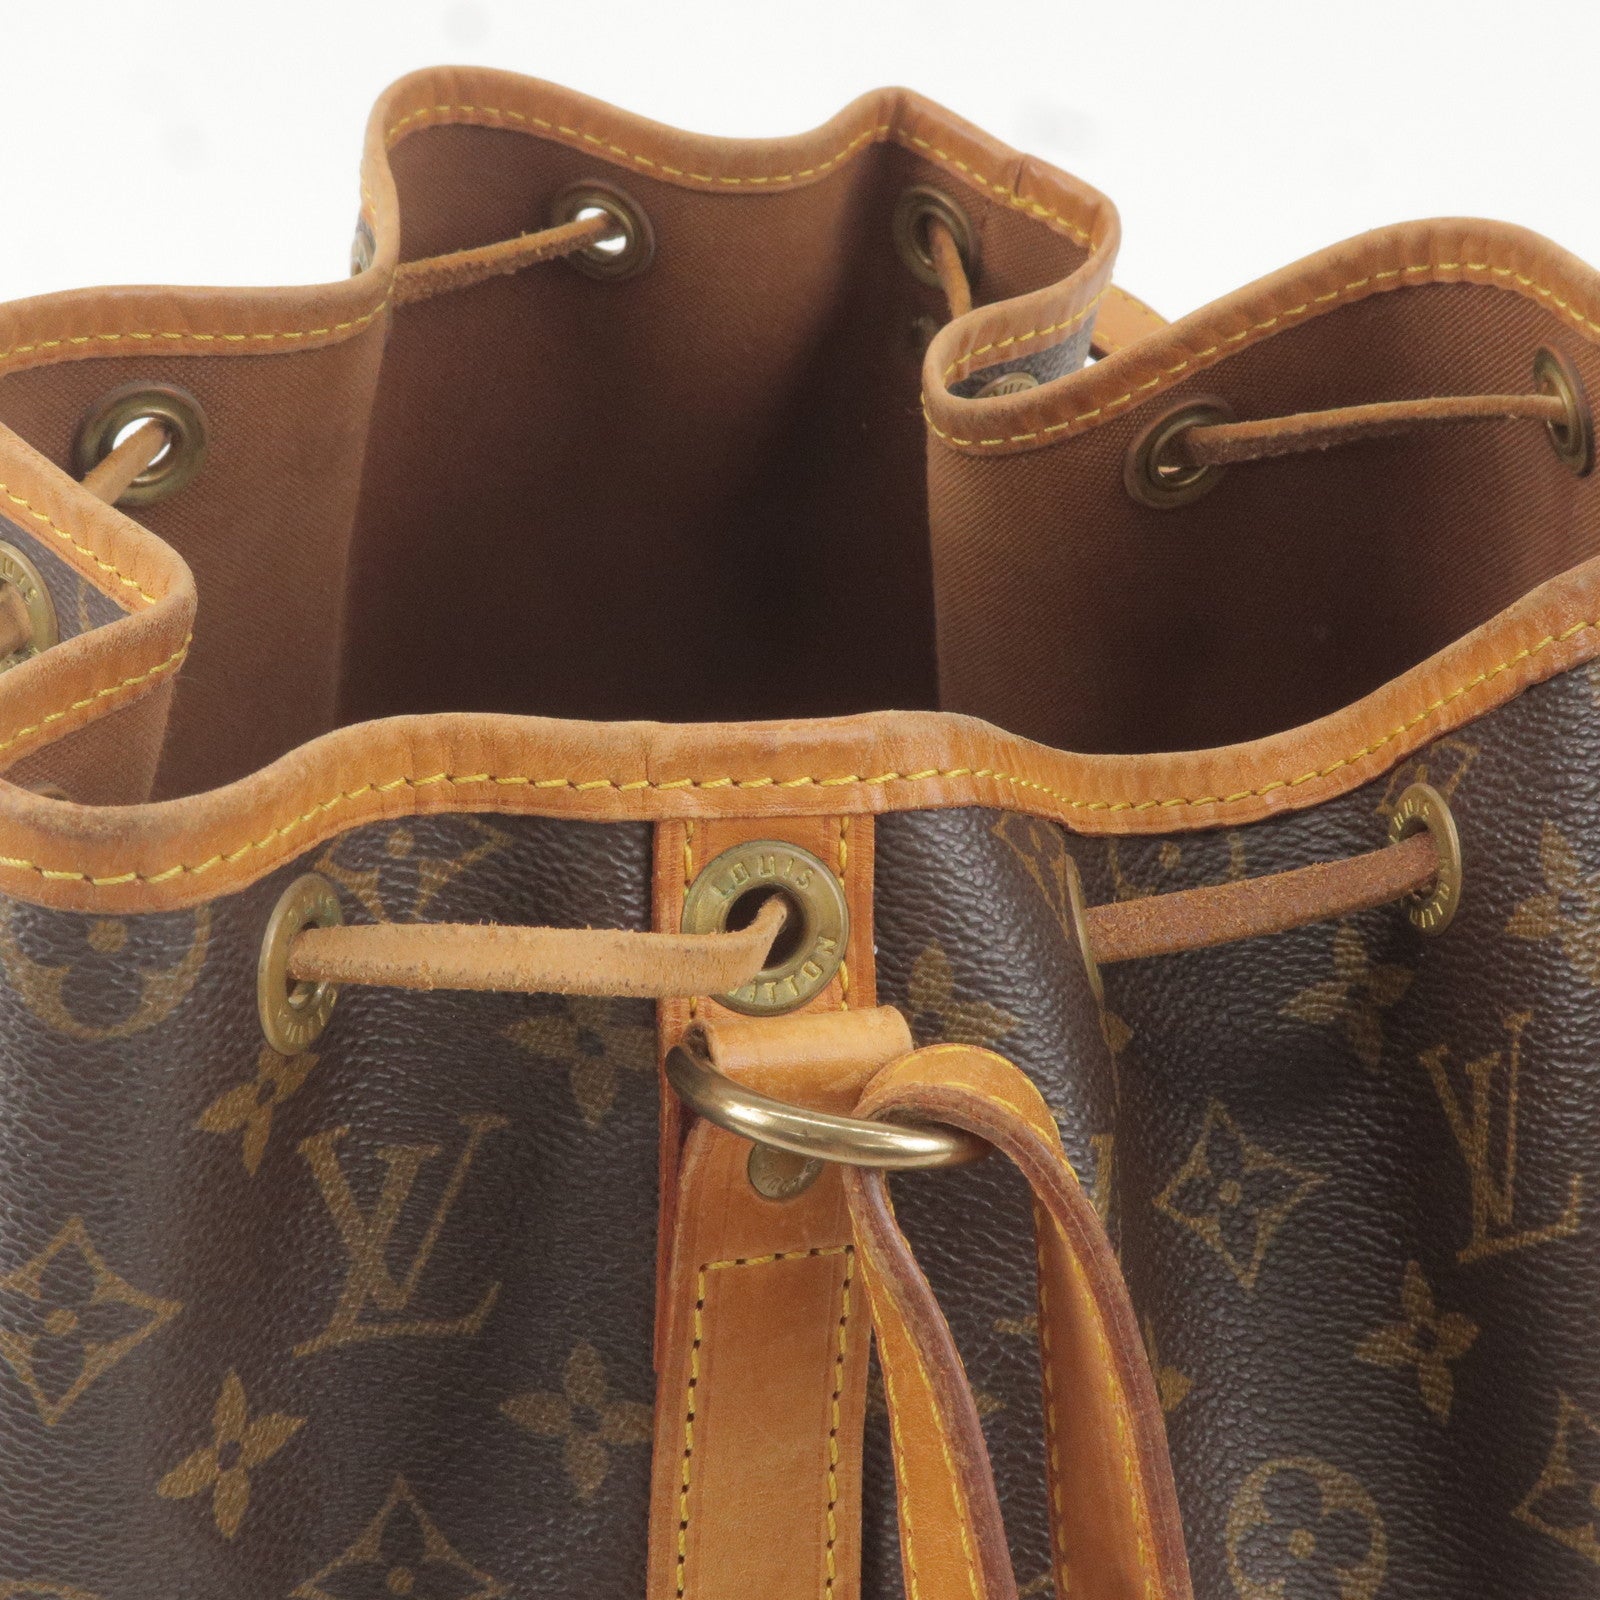 Vintage Style Copy Louis Vuitton Maxi Multi Pochette Accessoires